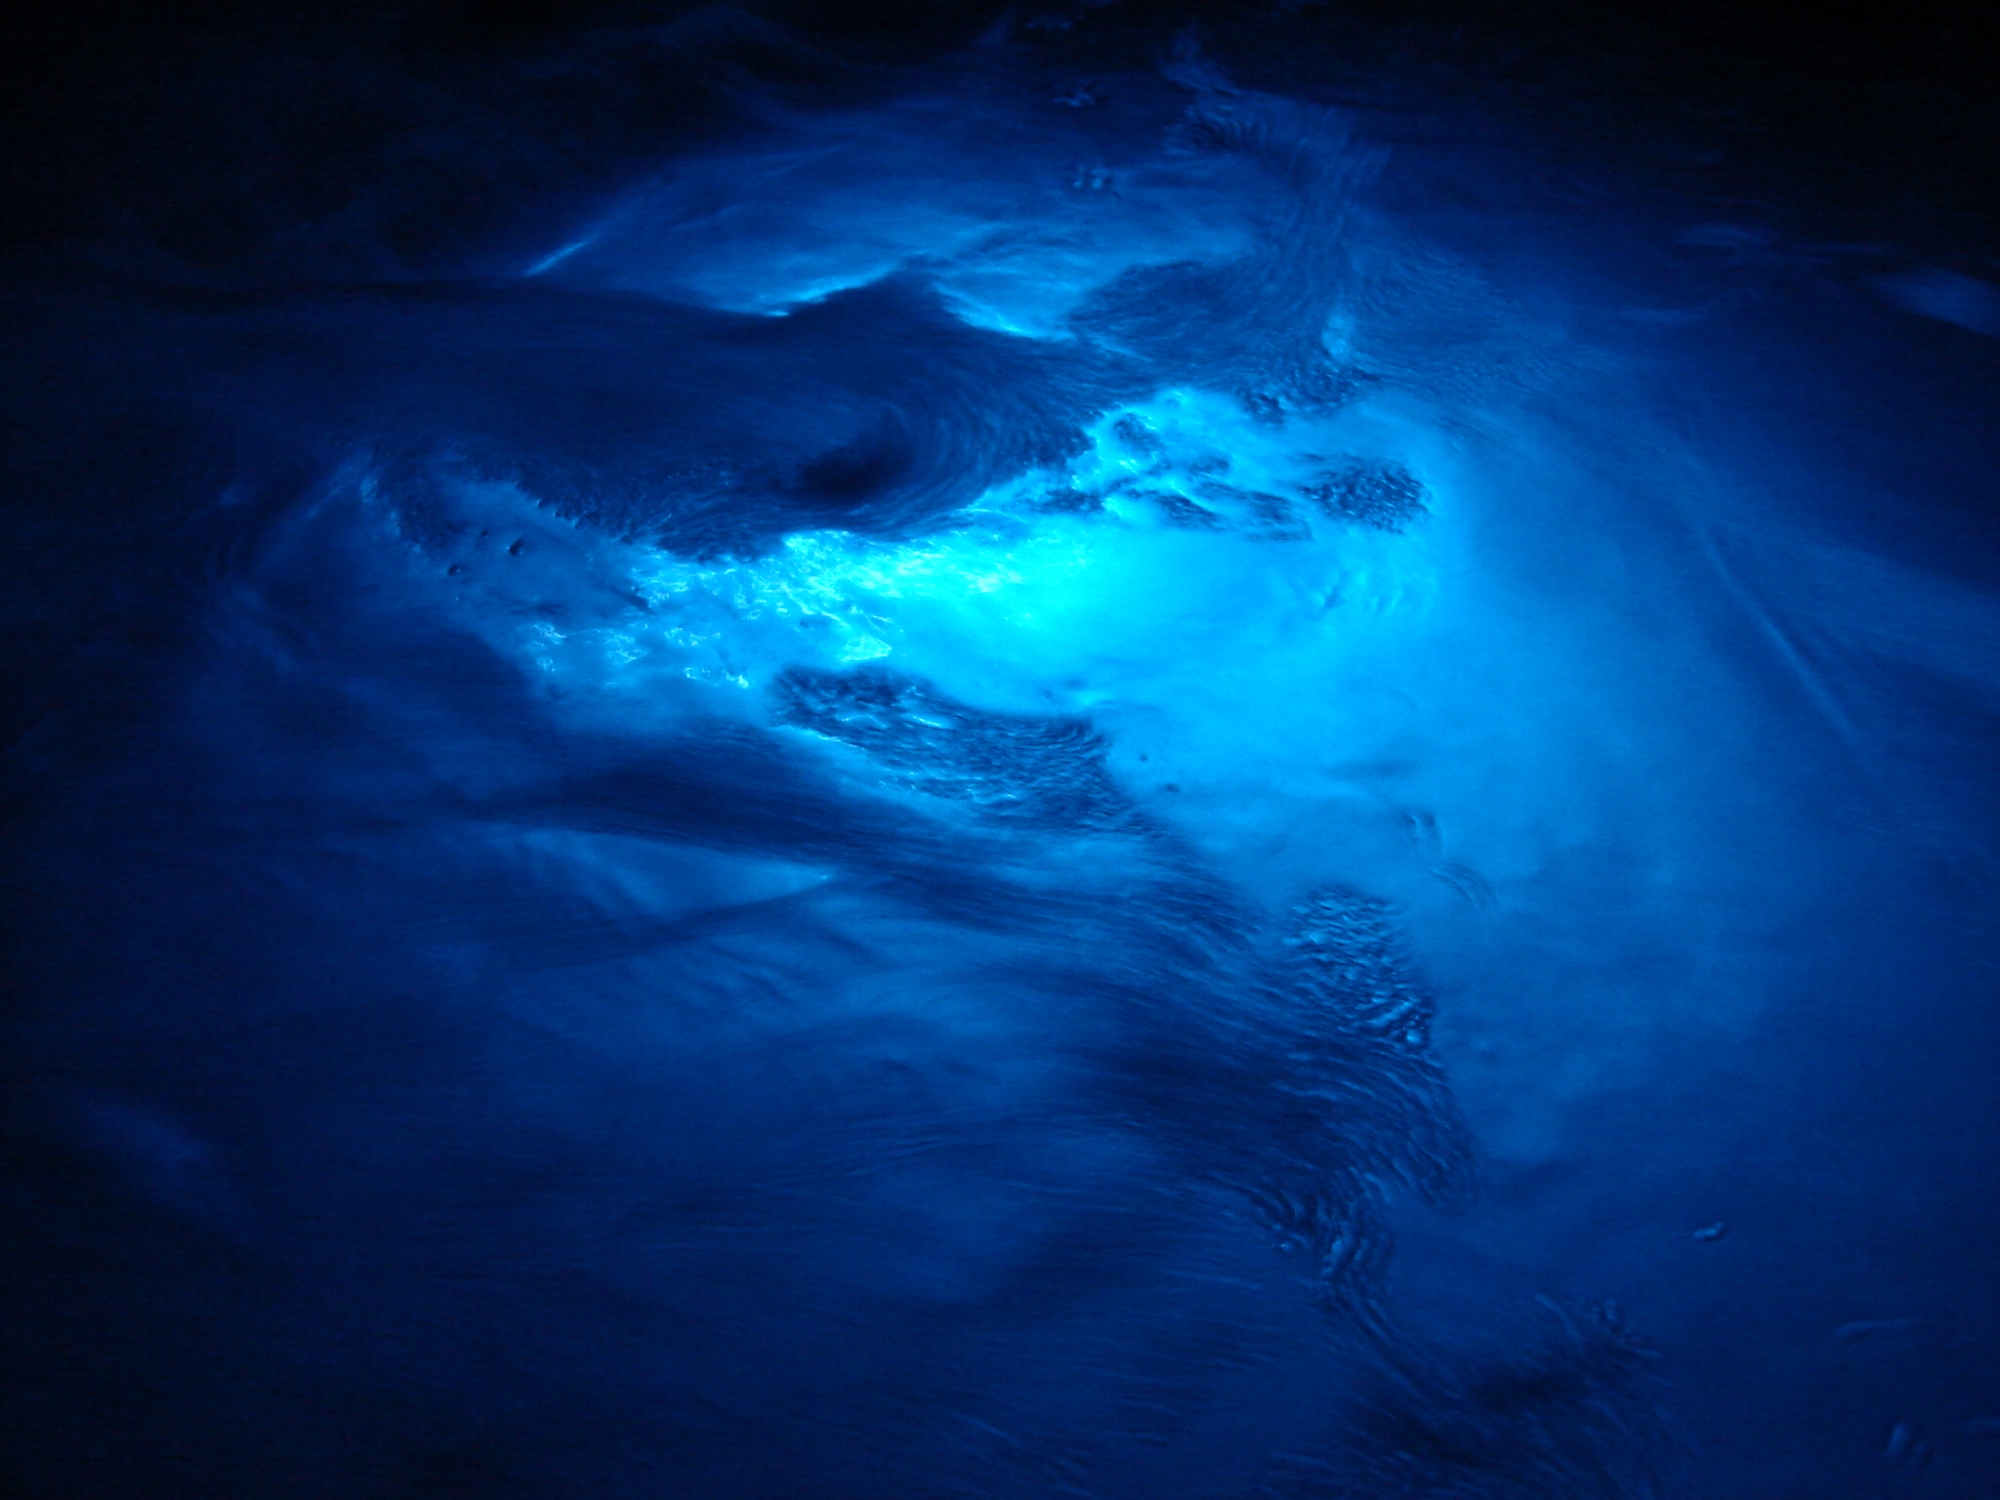 синяя морская вода, свет, скачать фото, текстура, sea water texture